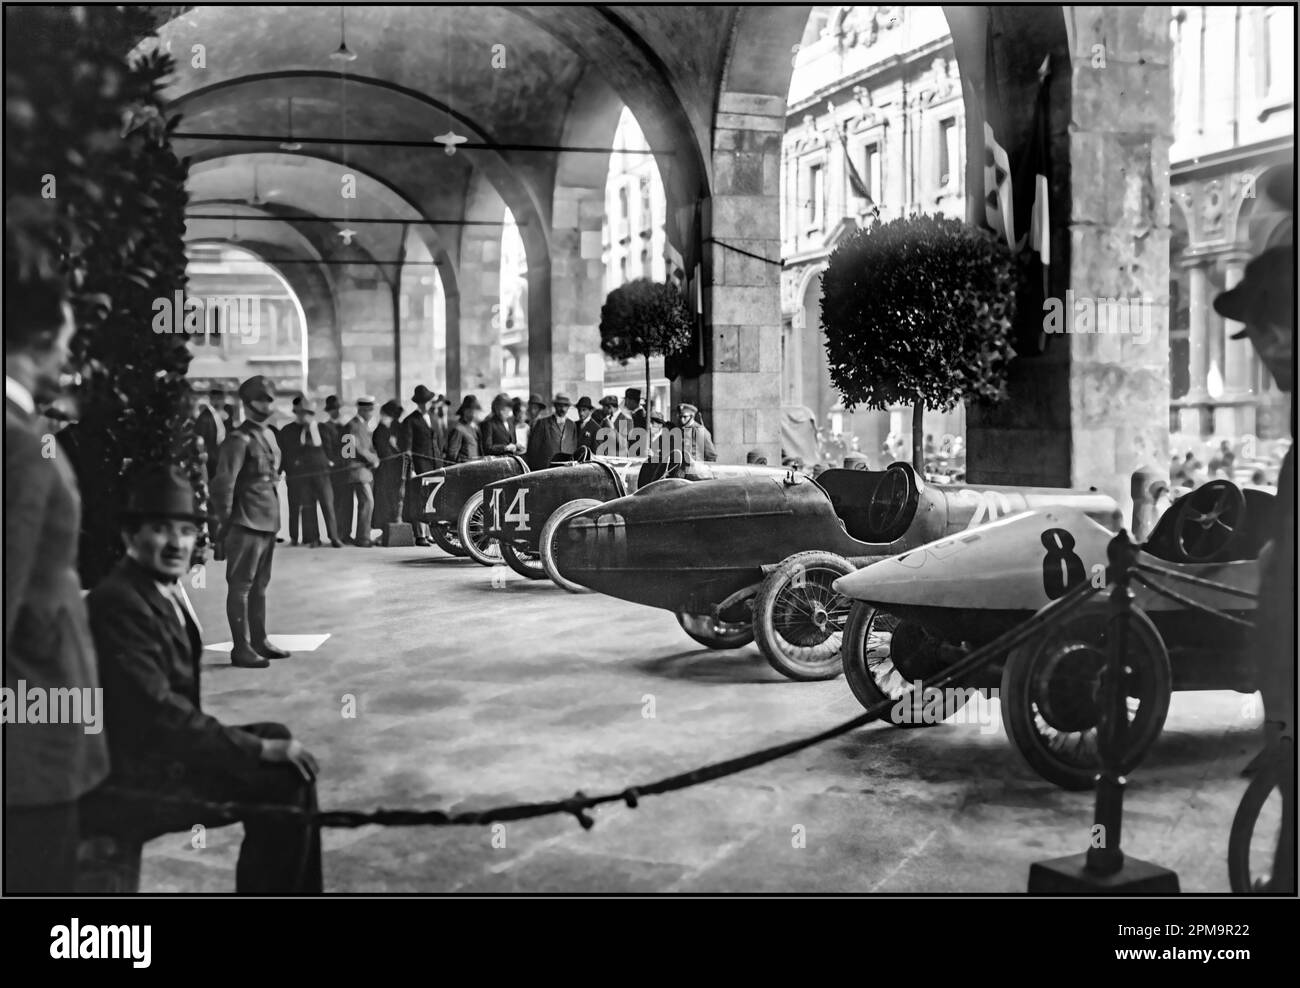 MONZA GRAND PRIX EXPOSE des voitures de course automobile exposées au premier Grand Prix d'Italie 1922 à Monza Italie date 10 septembre 1922 Banque D'Images